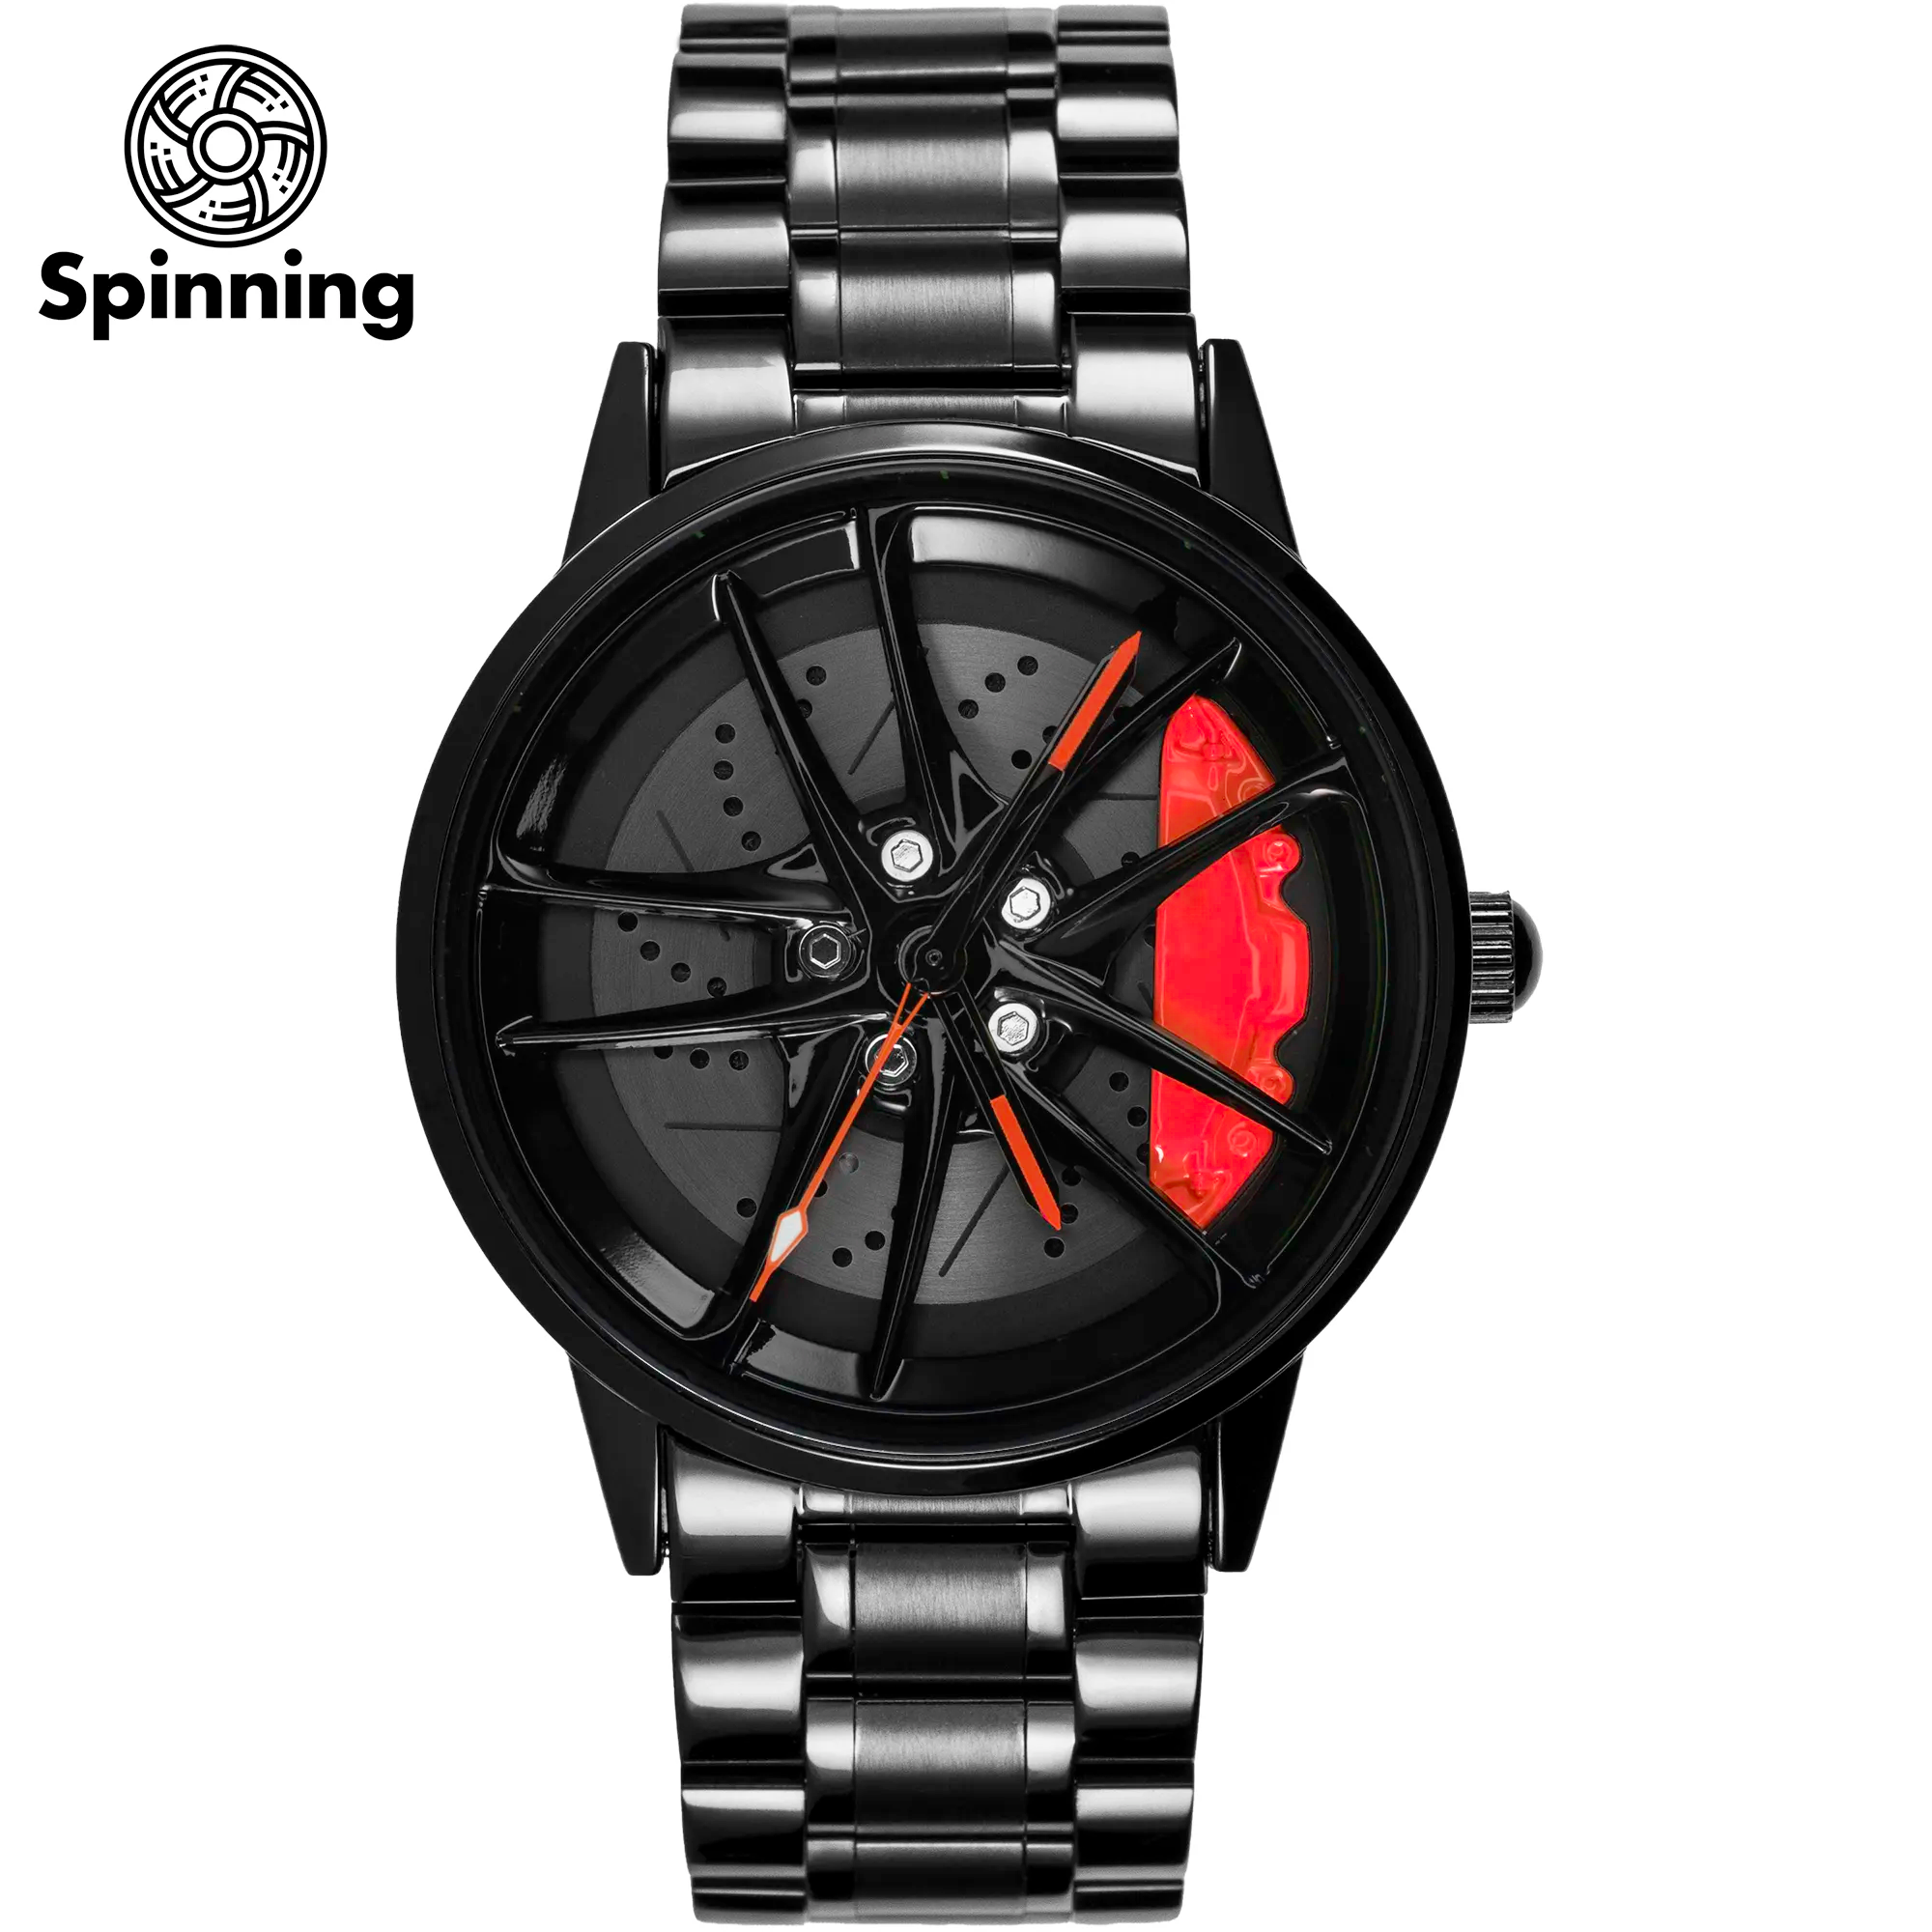 HMNWatch GR Supra Toyota Supra watches car rim watches toyota car wheel watches spinning car rim watches